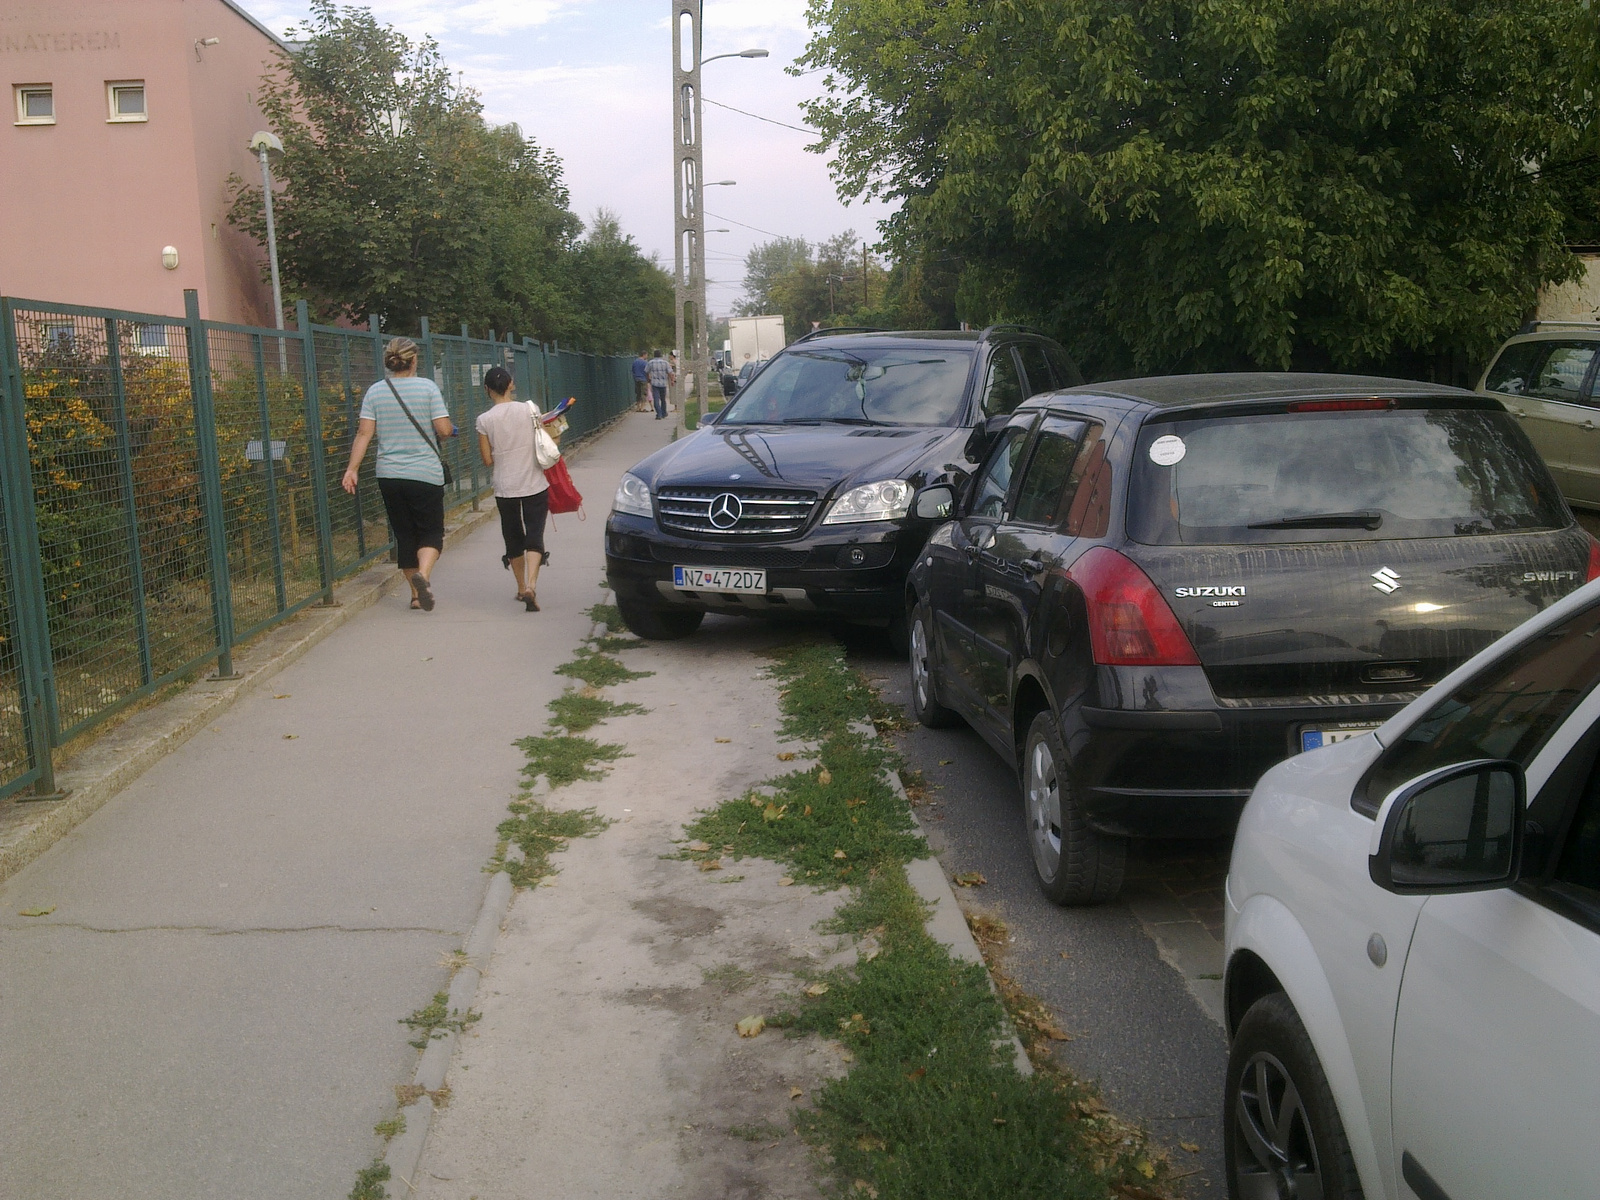 "Szlovák" merci parkolása iskolánál